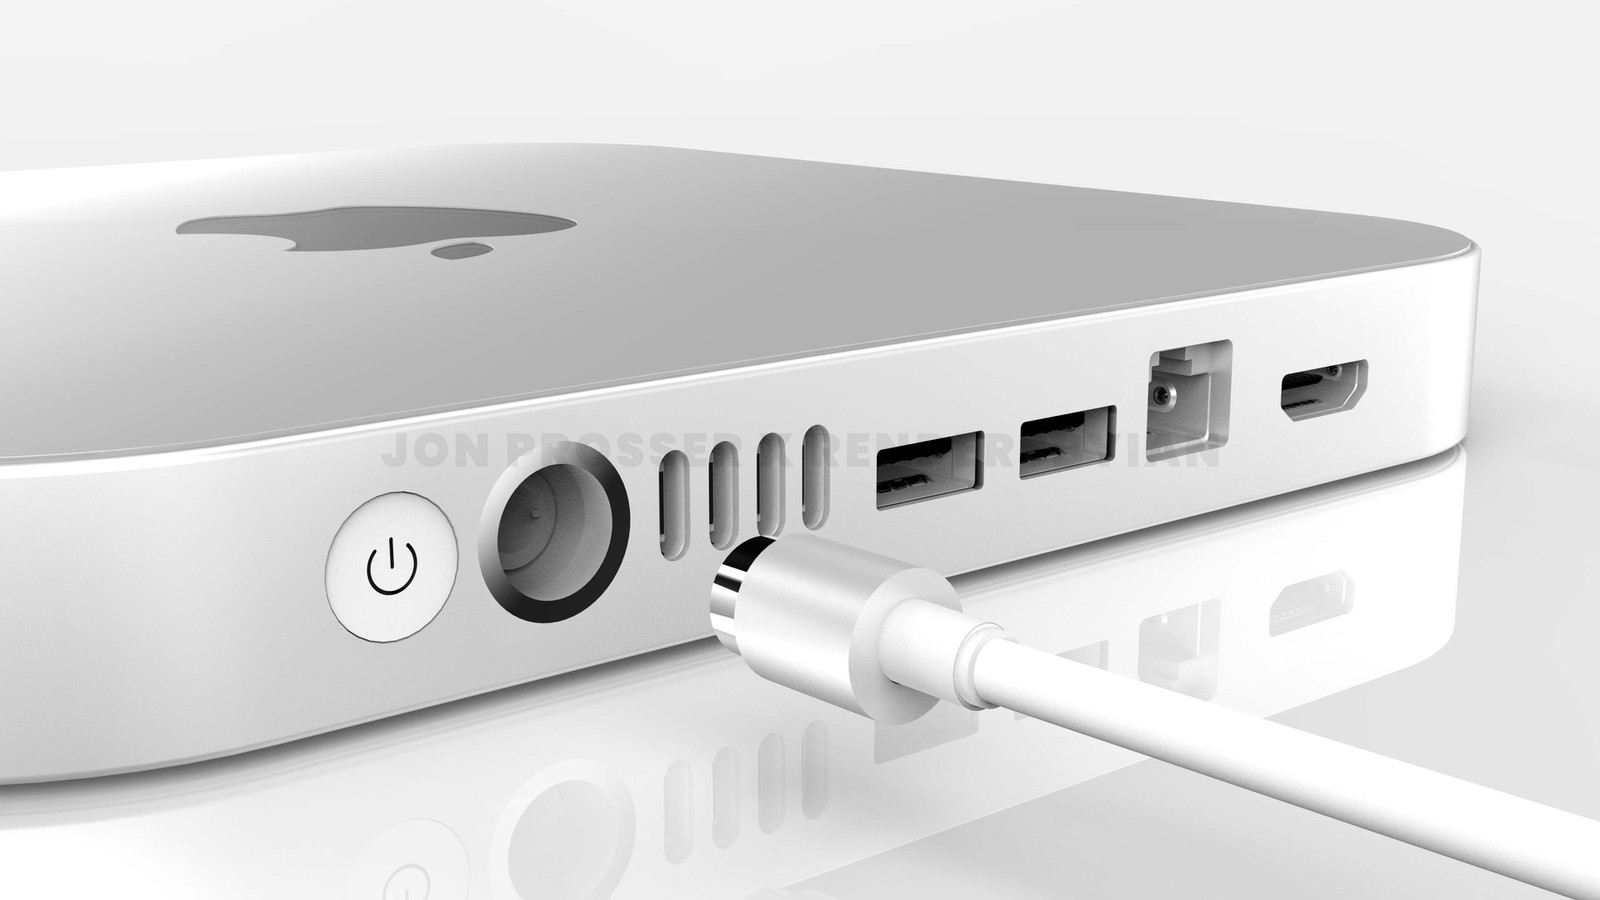 M1X 處理器 Mac mini 未來幾個月推出？全新設計更多接口 | Apple News, M1X, Mac mini, macOS | iPhone News 愛瘋了